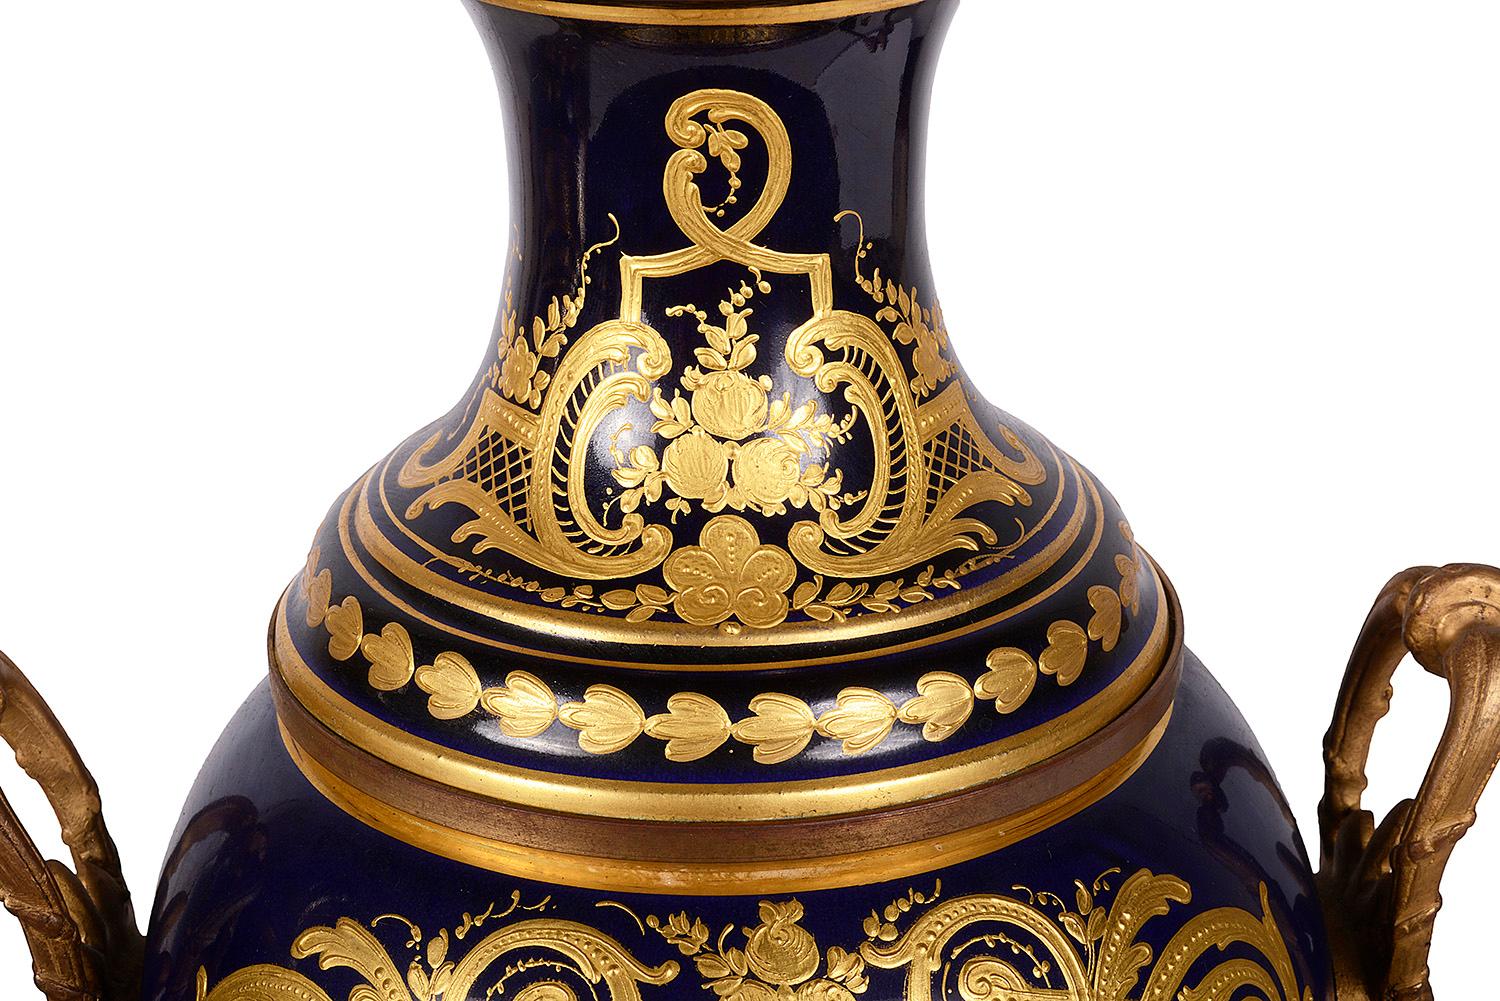 Une paire de vases en porcelaine de style Sèvres de bonne qualité, datant de la fin du 19e siècle, chacun avec des poignées classiques en bronze doré de chaque côté, un fond bleu cobalt avec une décoration dorée, des panneaux peints à la main